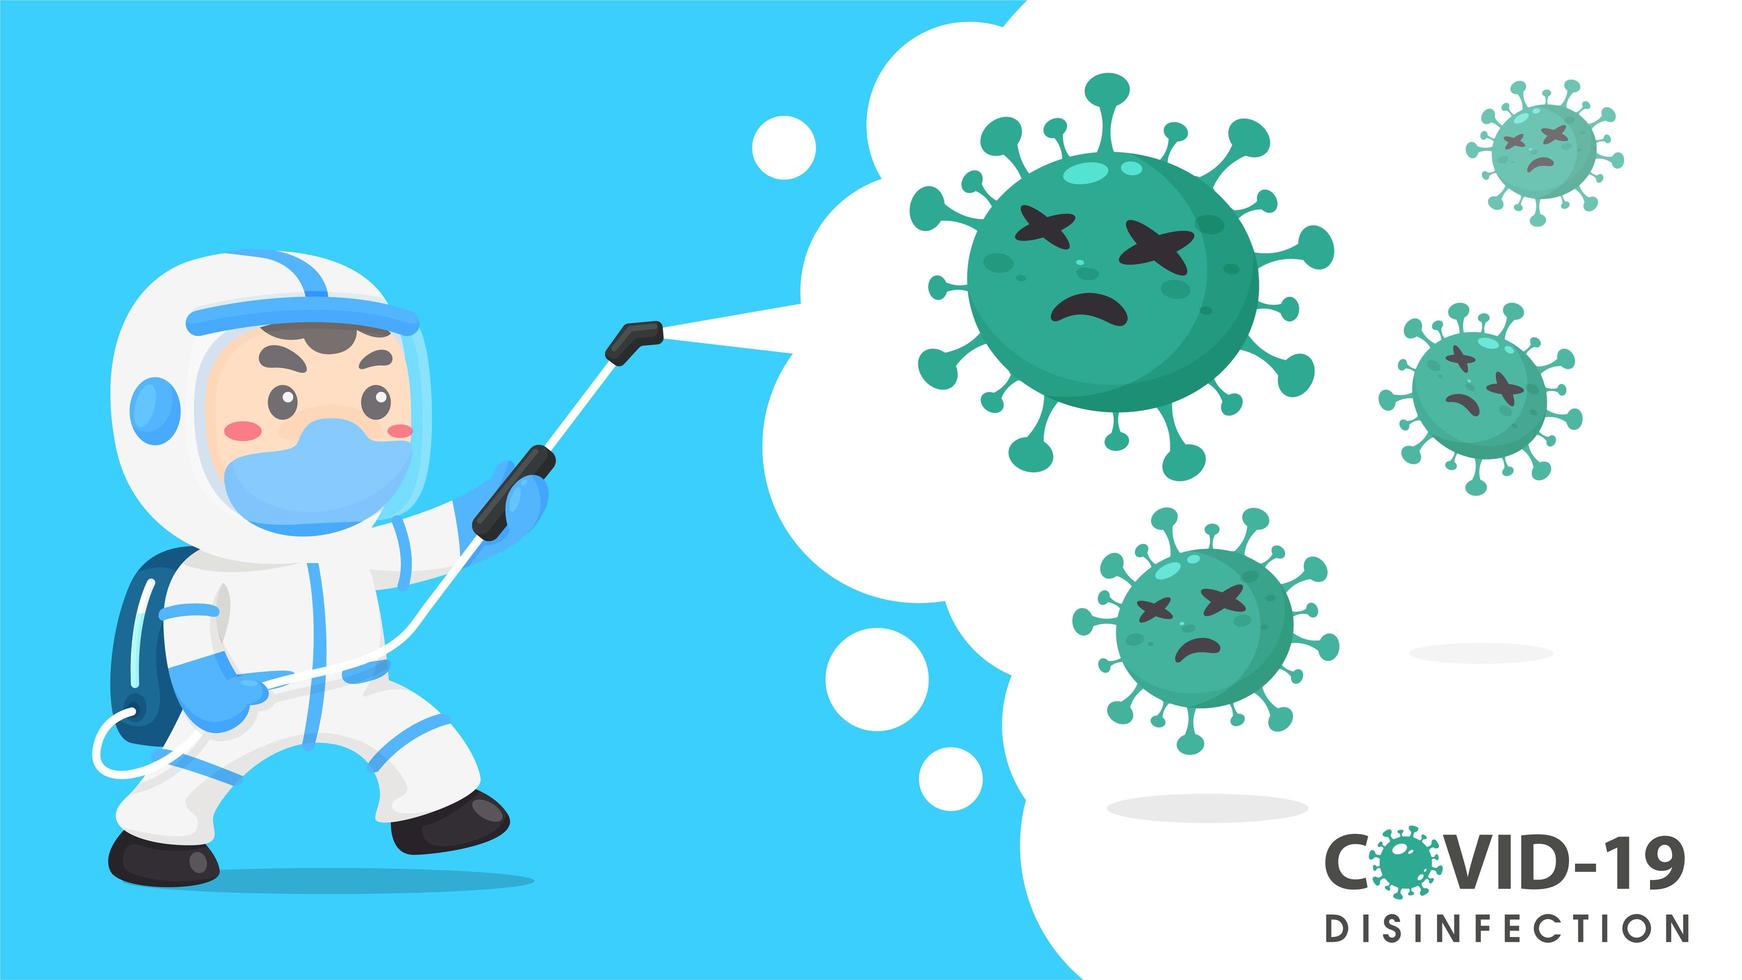 باتوجه به اینکه ویروس کرونا از طریق هوا منتقل می شود، برای حفظ ایمنی باید به چه نکاتی توجه کرد؟/اختصاصی